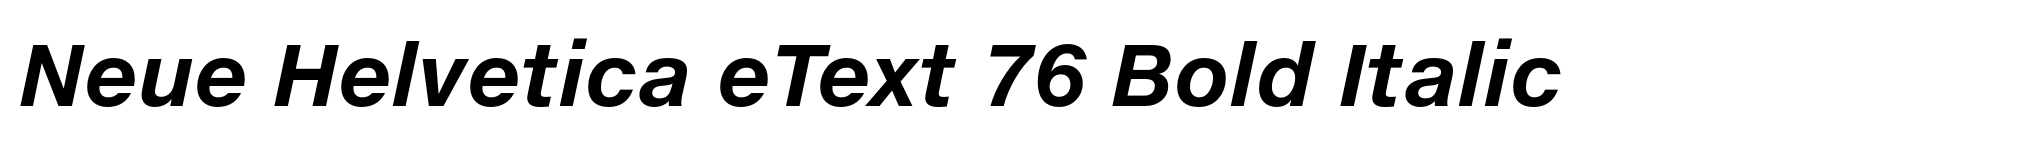 Neue Helvetica eText 76 Bold Italic image